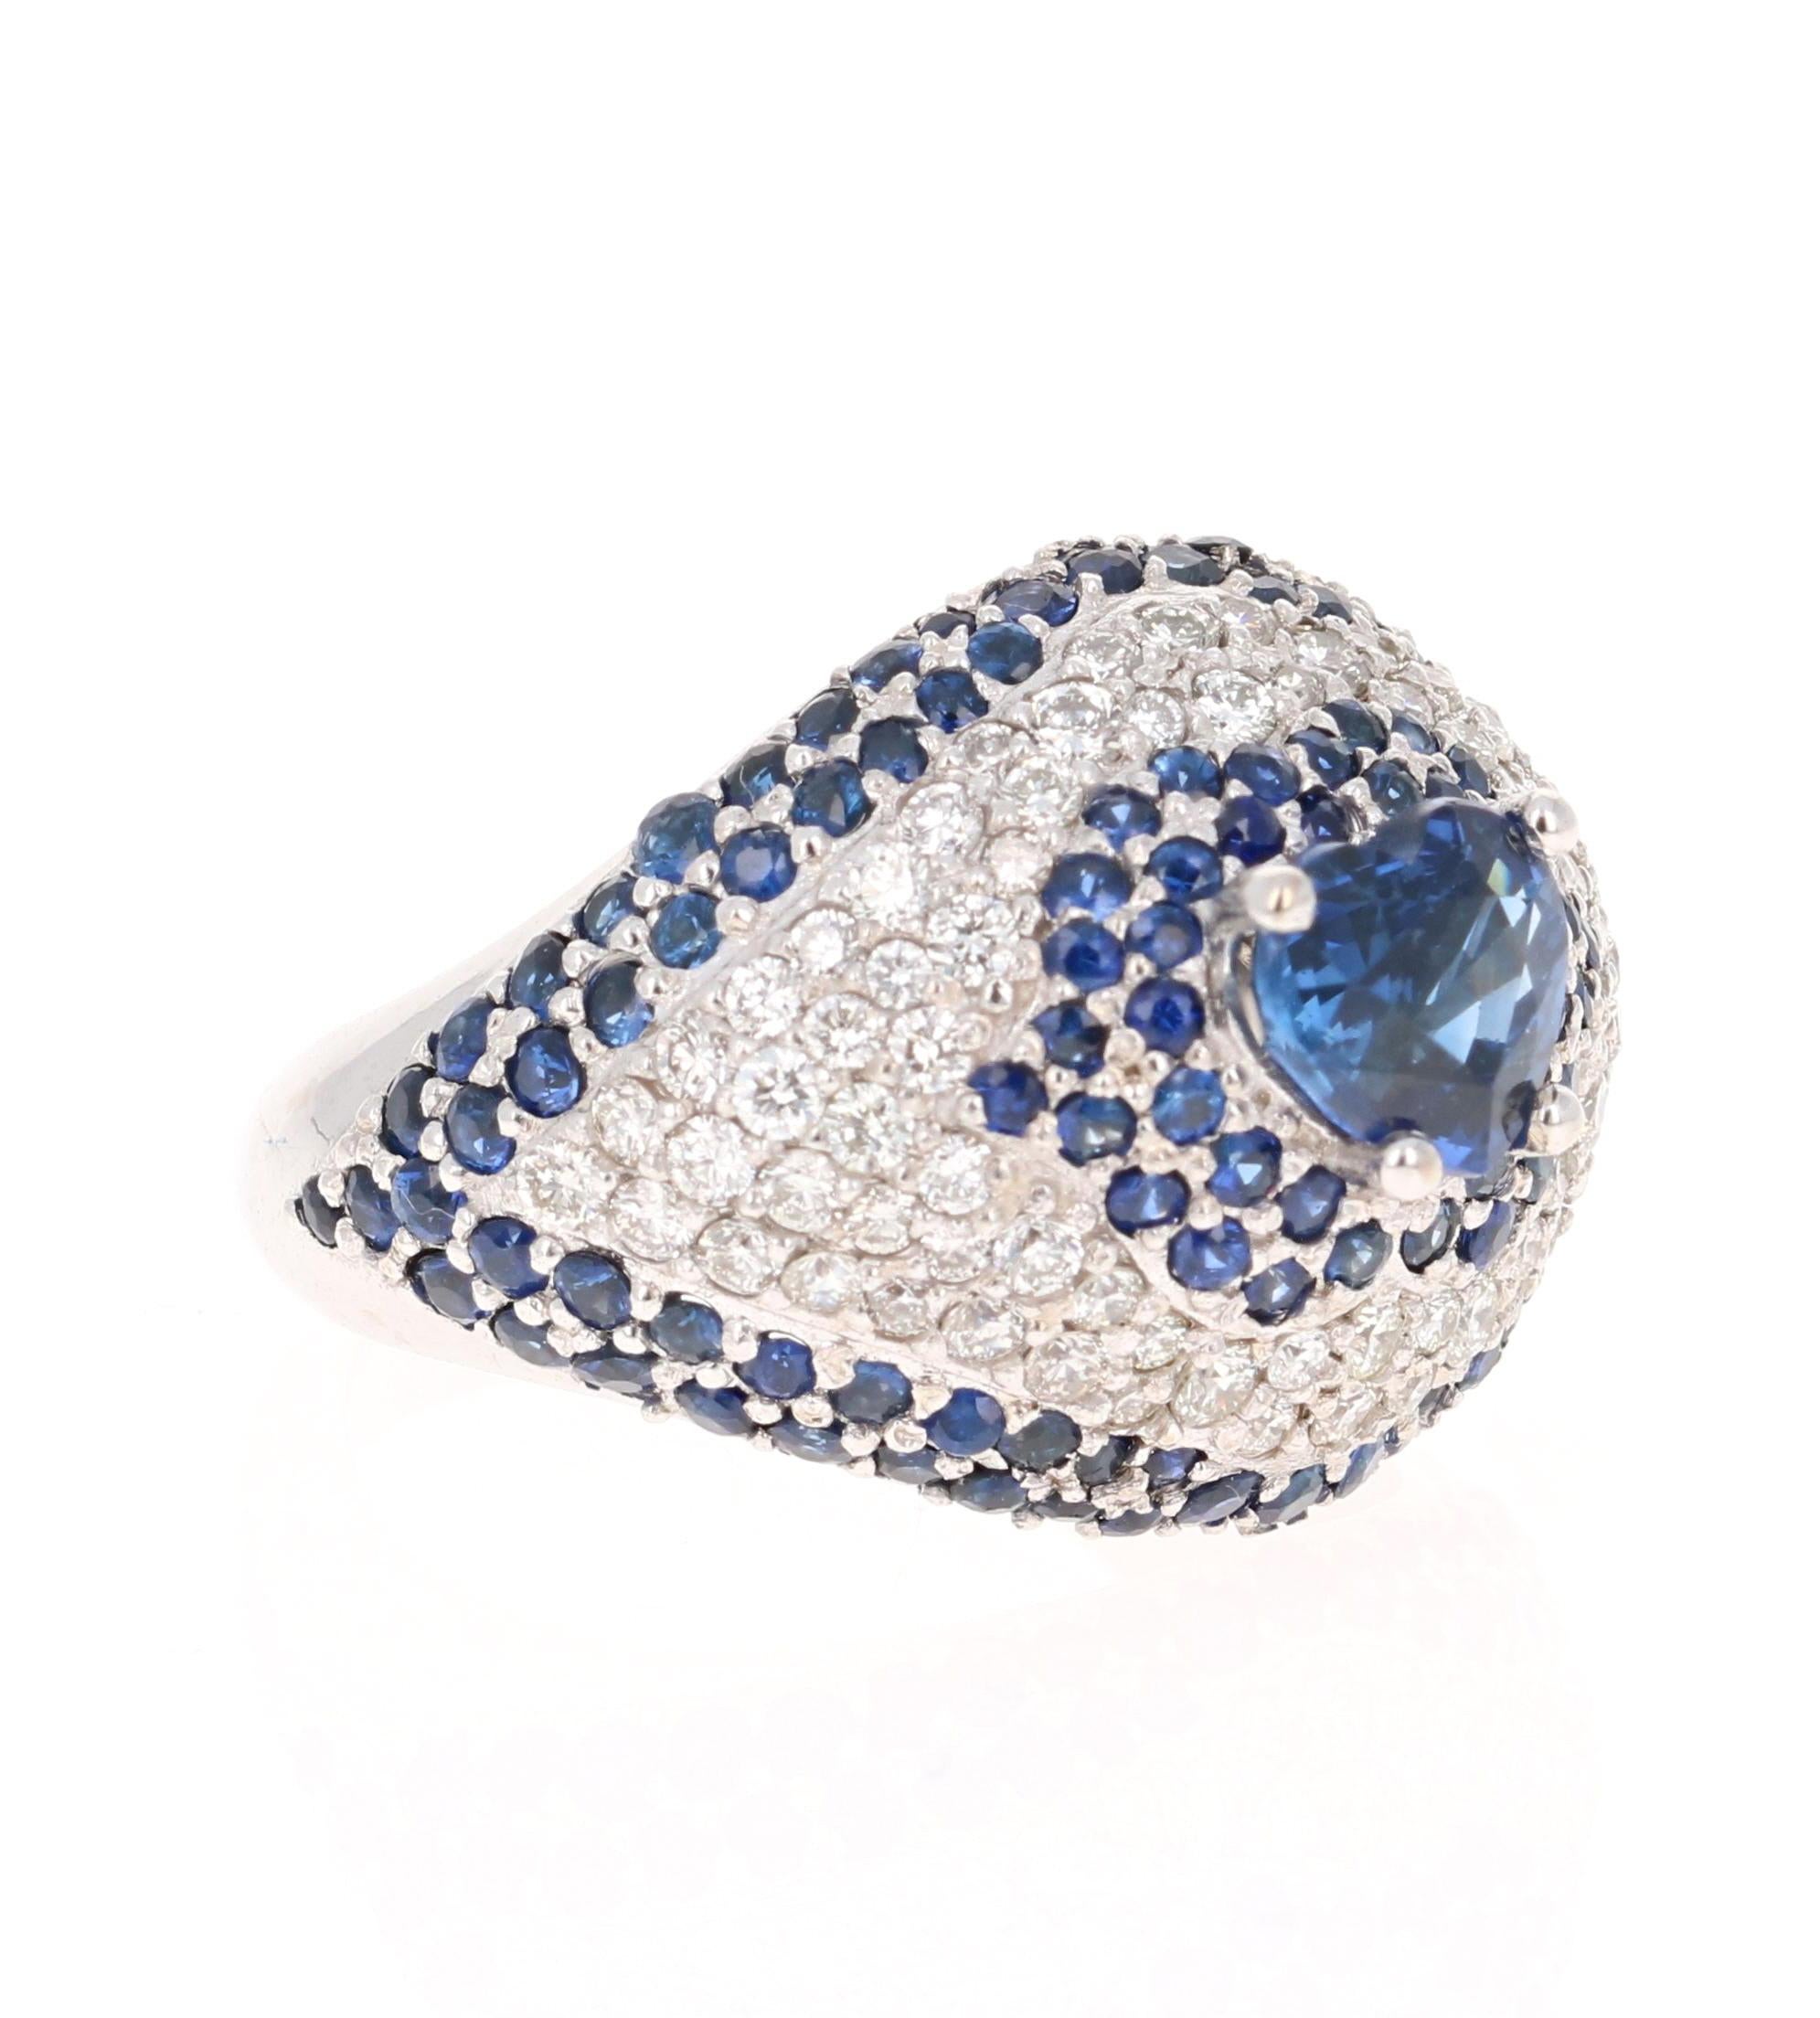 Dieser schöne blaue Saphirring hat einen blauen Saphir im Herzschliff mit 1,27 Karat und ist von 130 Saphiren mit einem Gewicht von 1,95 Karat umgeben. Er ist außerdem mit 78 Diamanten im Rundschliff mit einem Gewicht von 0,95 Karat verziert. Das